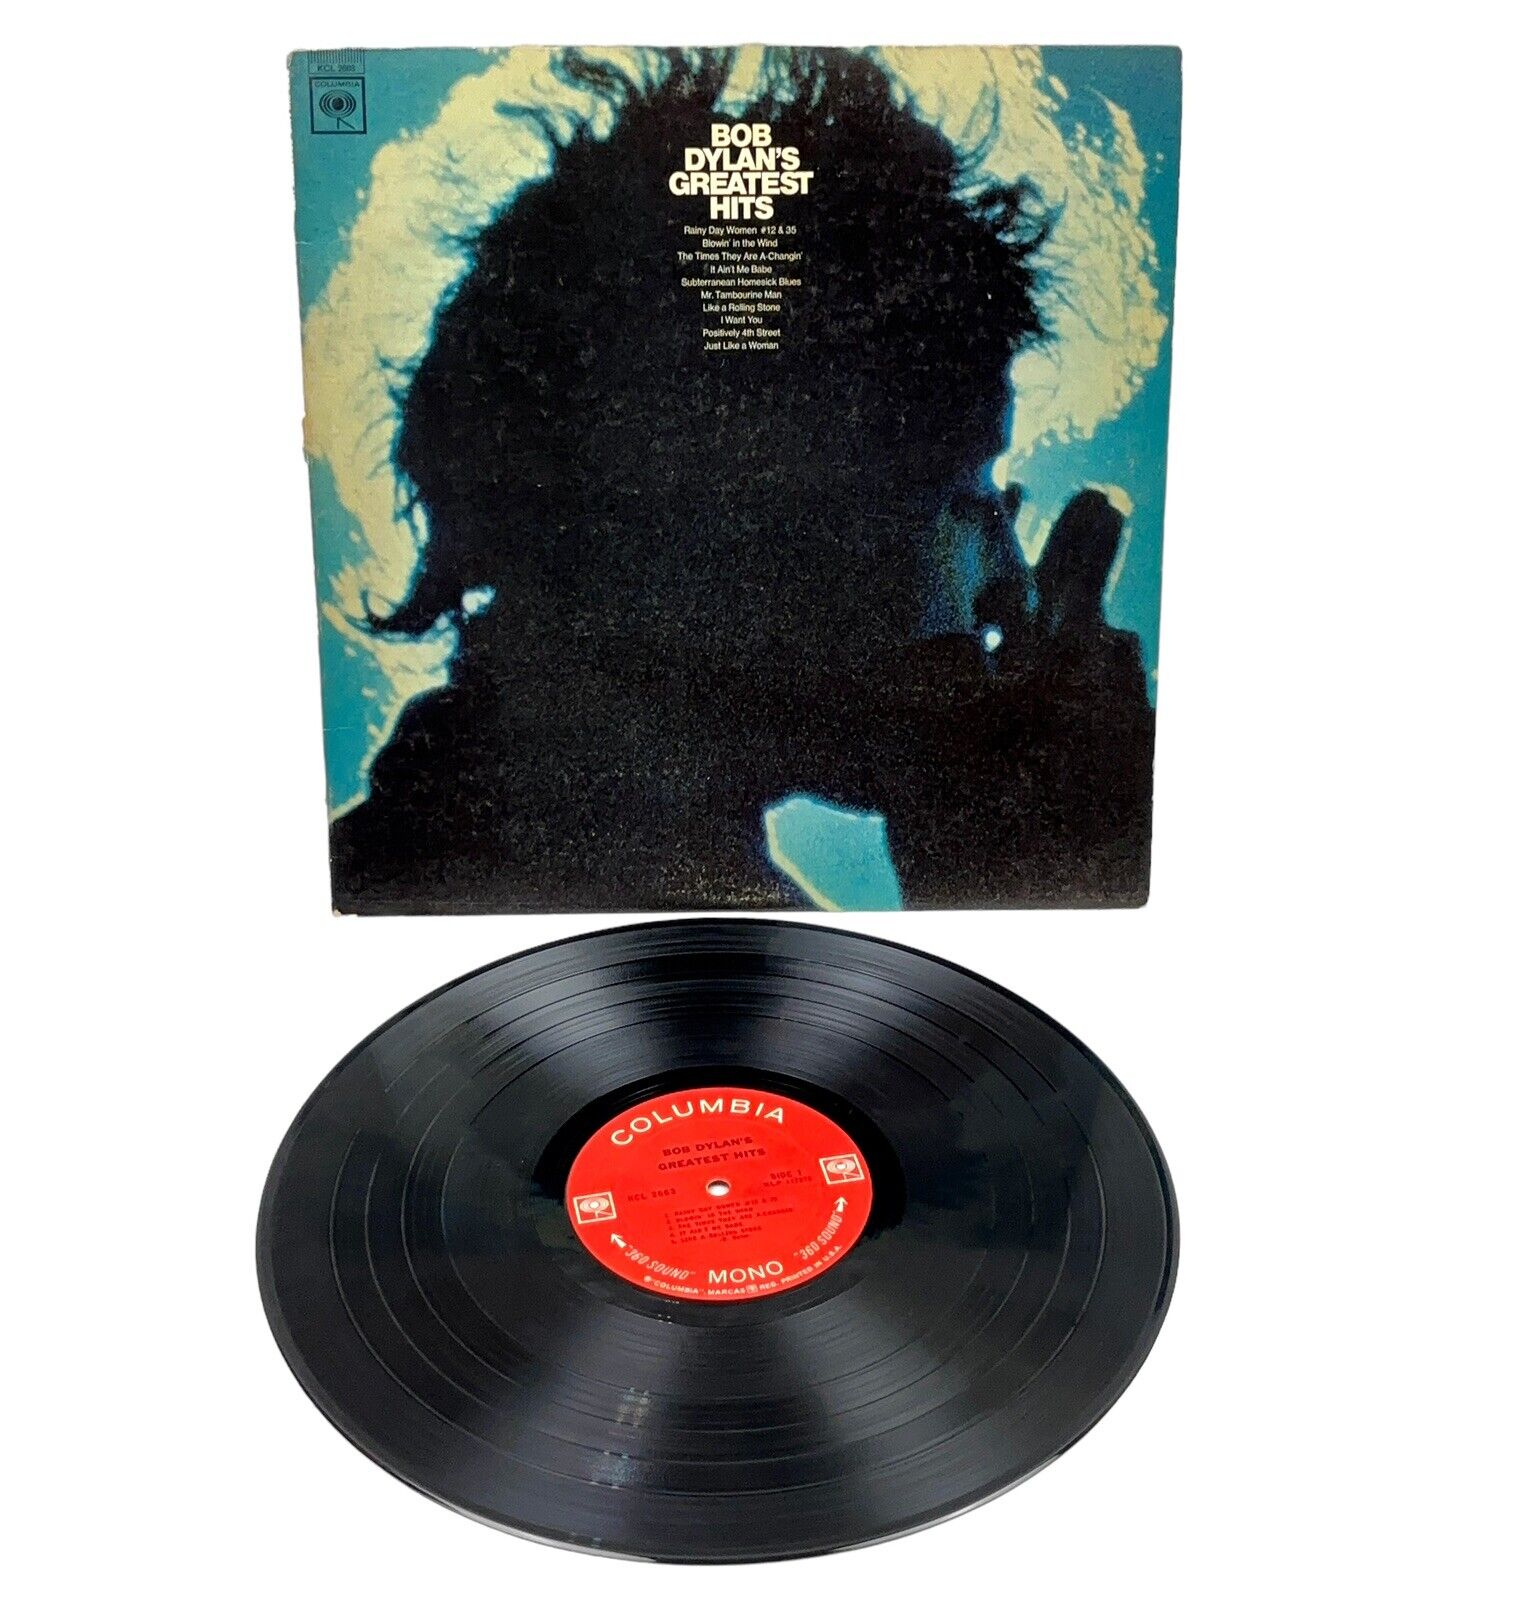 Bob Dylan Greatest Hits 1967 Columbia Mono Press KCL-2663 360 Sound Label VG/VG